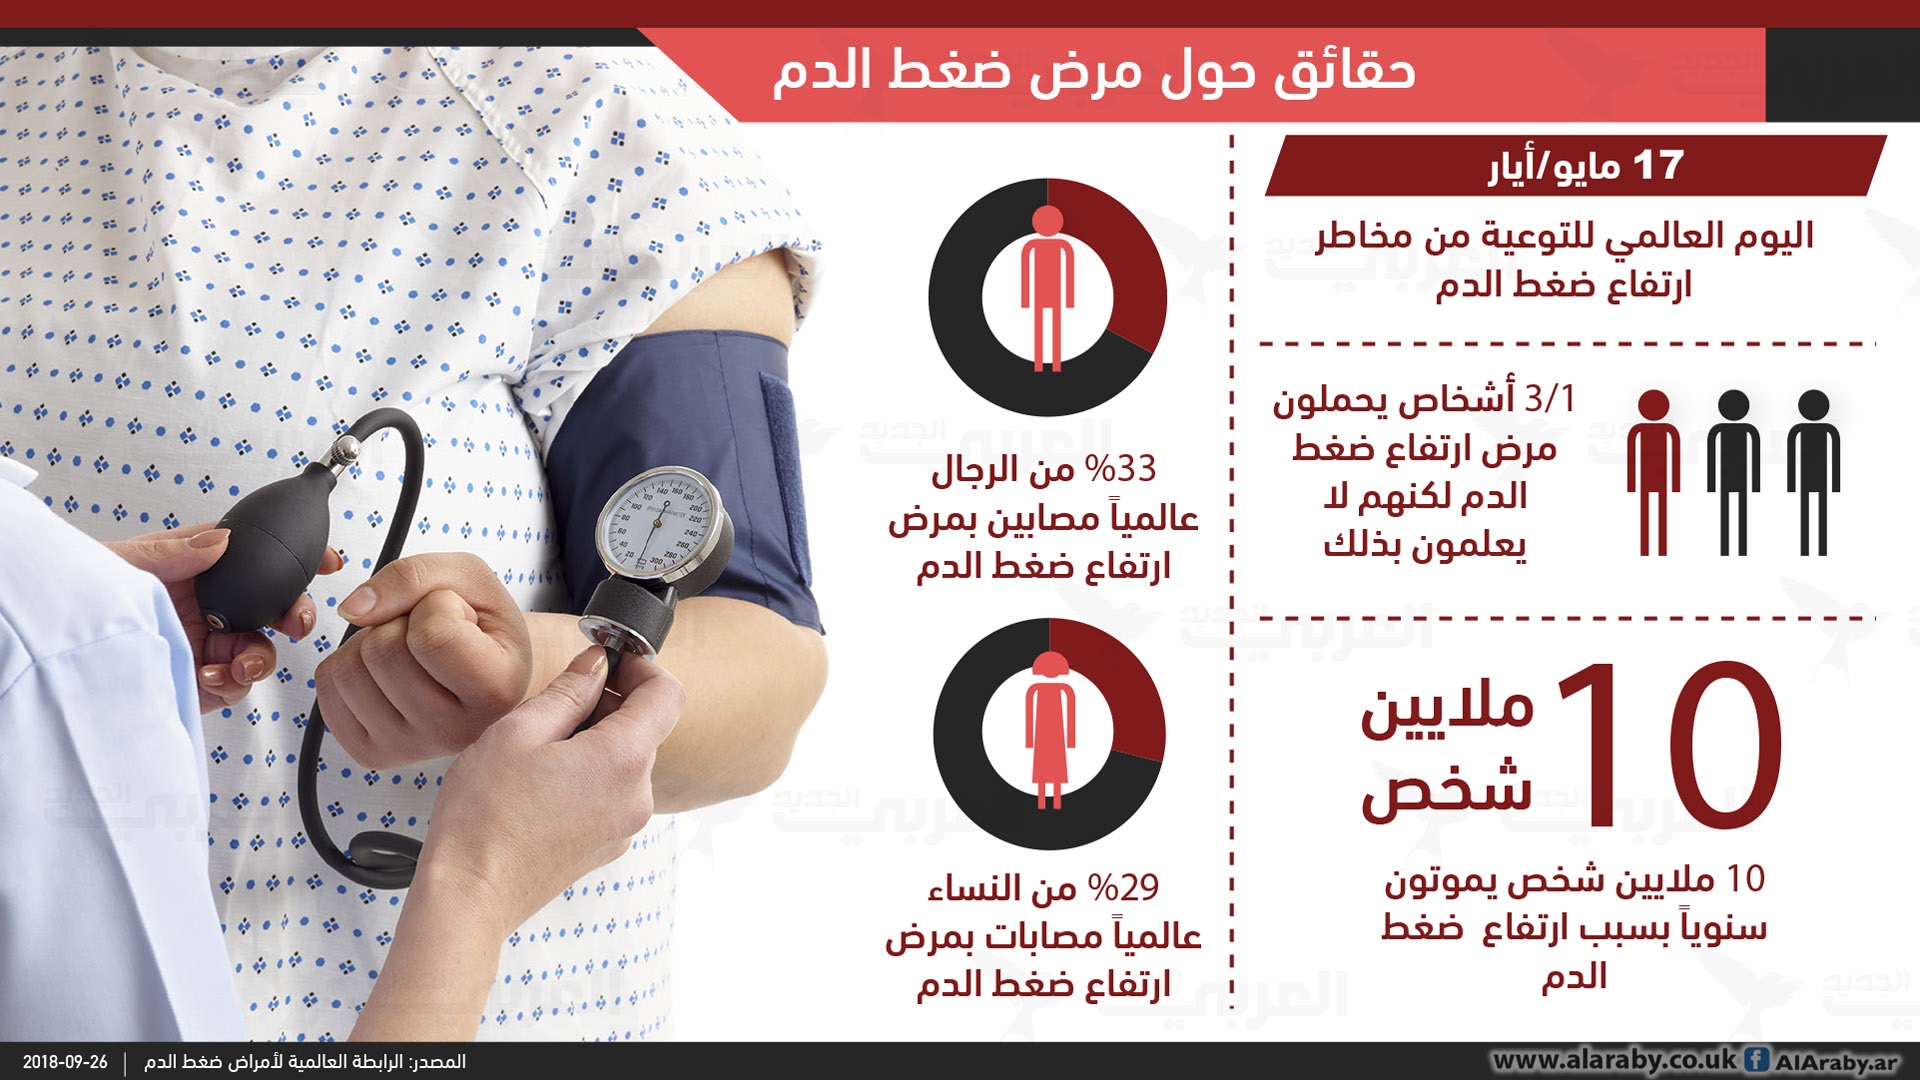 بودرة دورية تميز اسباب ارتفاع ضغط الدم المفاجئ عند الشباب كومرتينسات كوم